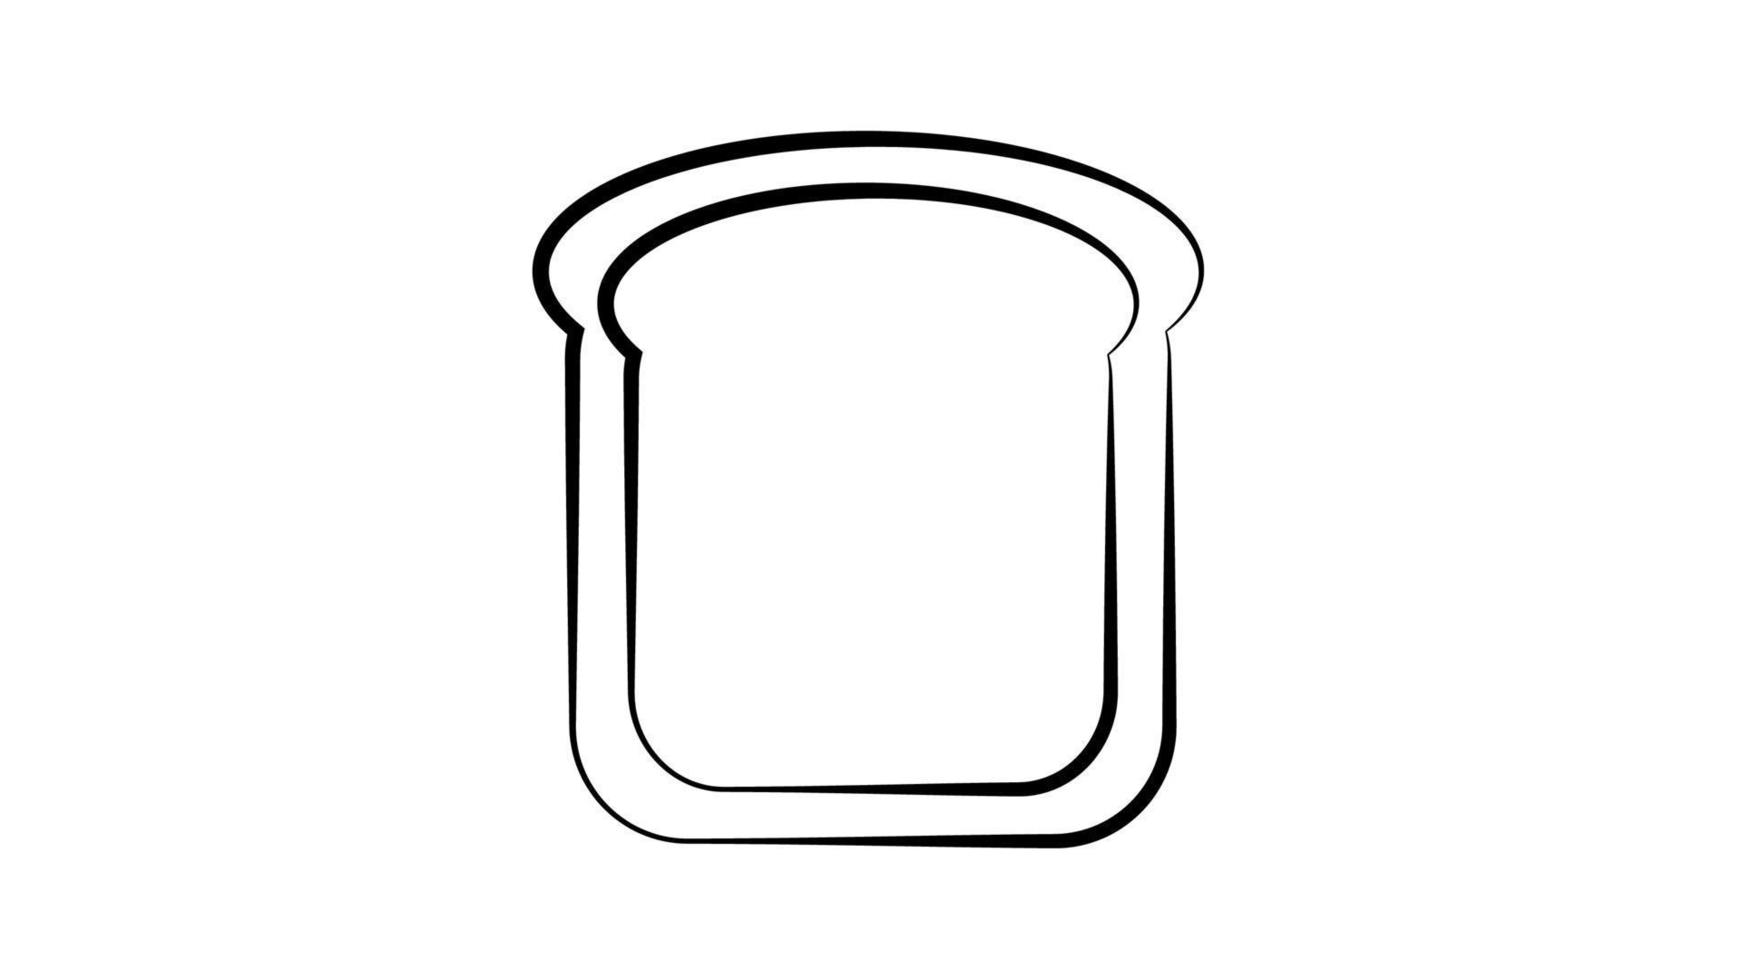 ein Stück Brot mit Kruste auf weißem Hintergrund. Vektor-Schwarz-Weiß-Illustration. Sandwichbrot, belegter Sandwichboden vektor